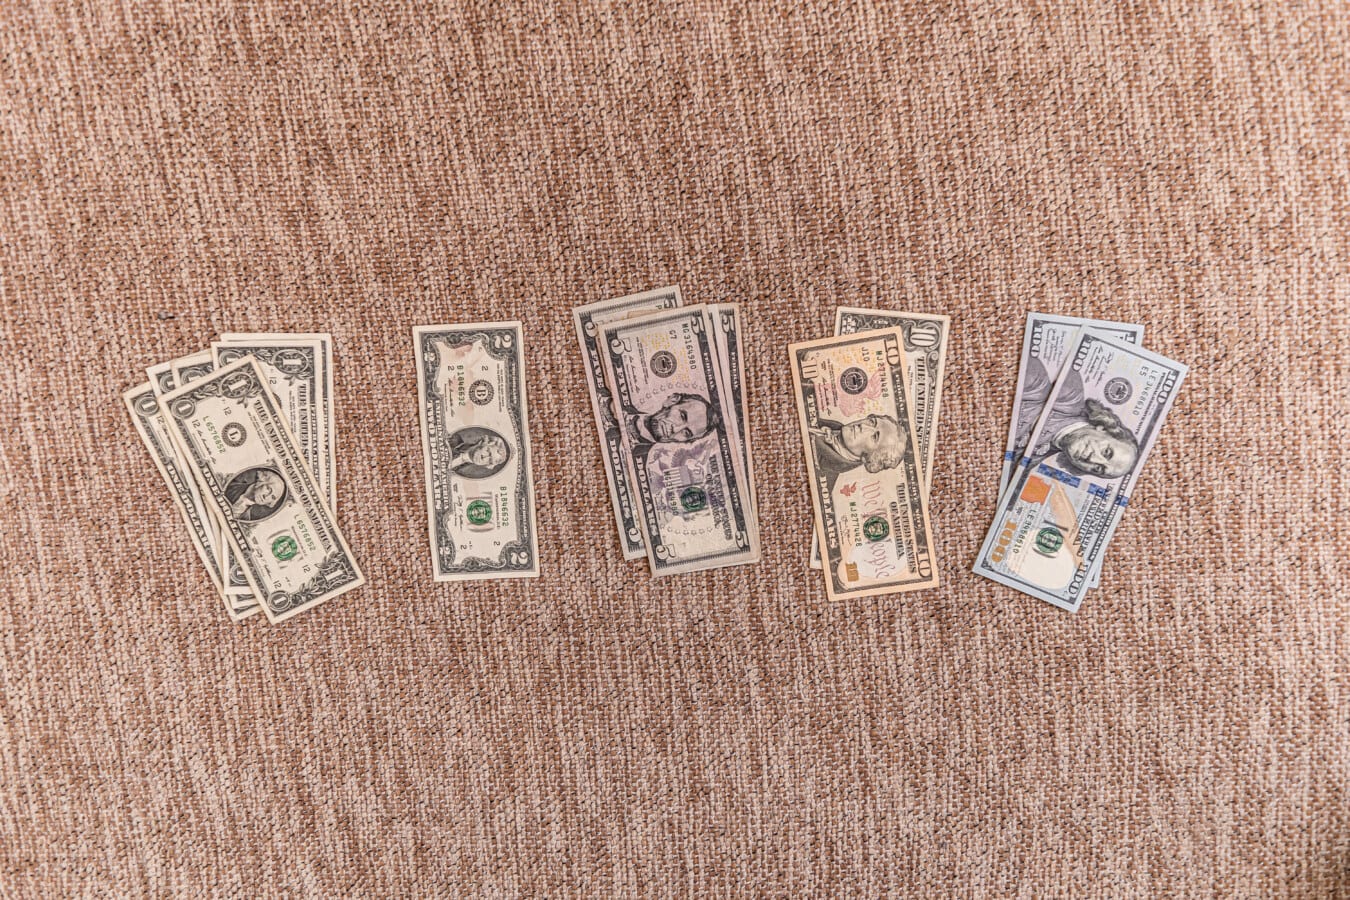 dólar, dinero en efectivo, papel moneda, colección, Estados Unidos, papel, moneda, dinero, marrón, detalle